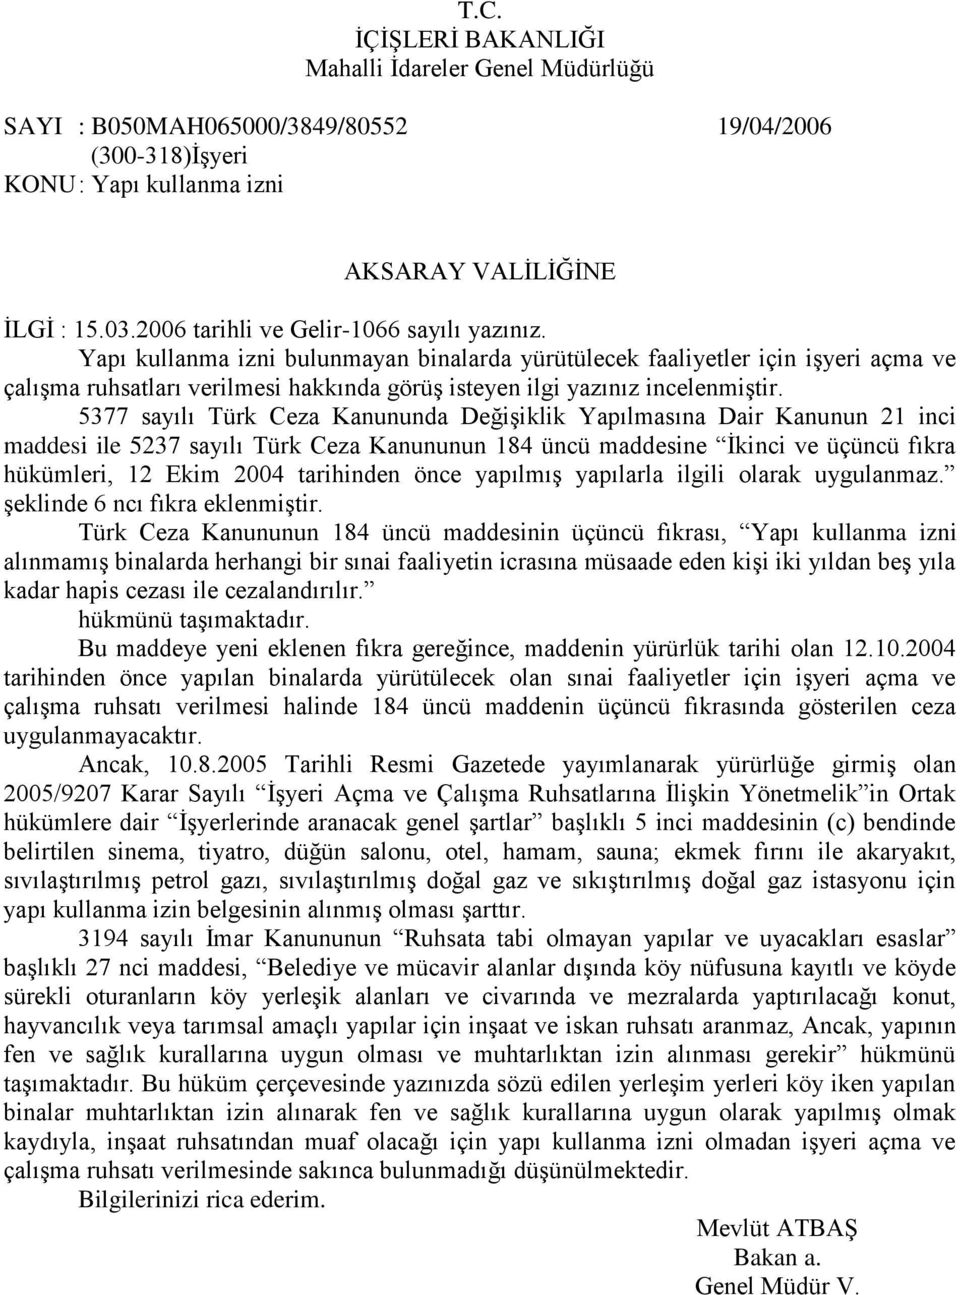 5377 sayılı Türk Ceza Kanununda DeğiĢiklik Yapılmasına Dair Kanunun 21 inci maddesi ile 5237 sayılı Türk Ceza Kanununun 184 üncü maddesine Ġkinci ve üçüncü fıkra hükümleri, 12 Ekim 2004 tarihinden